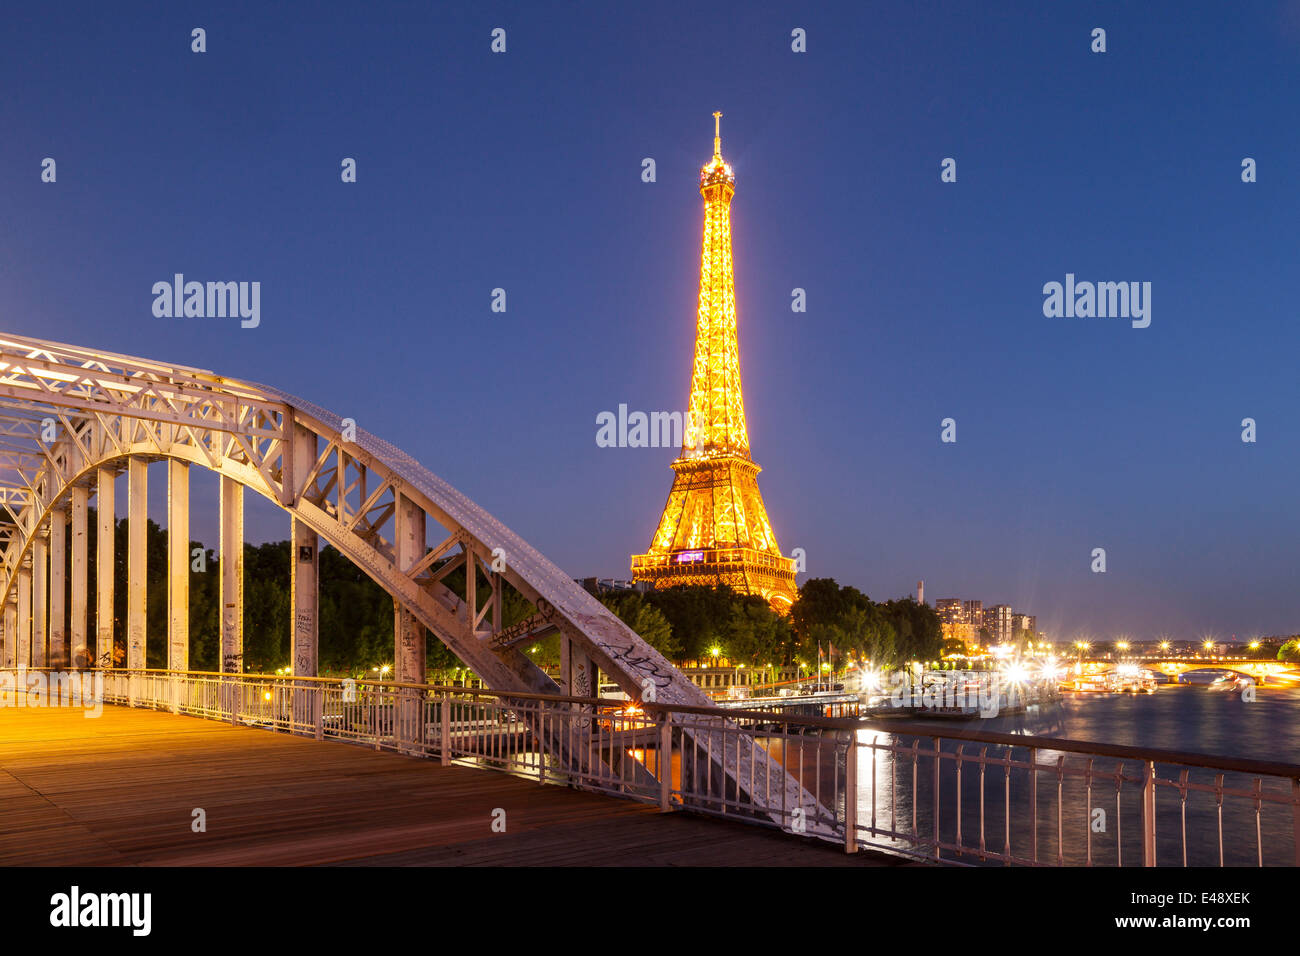 La Torre Eiffel en París, Francia. Es uno de los lugares más visitados en el mundo. Foto de stock